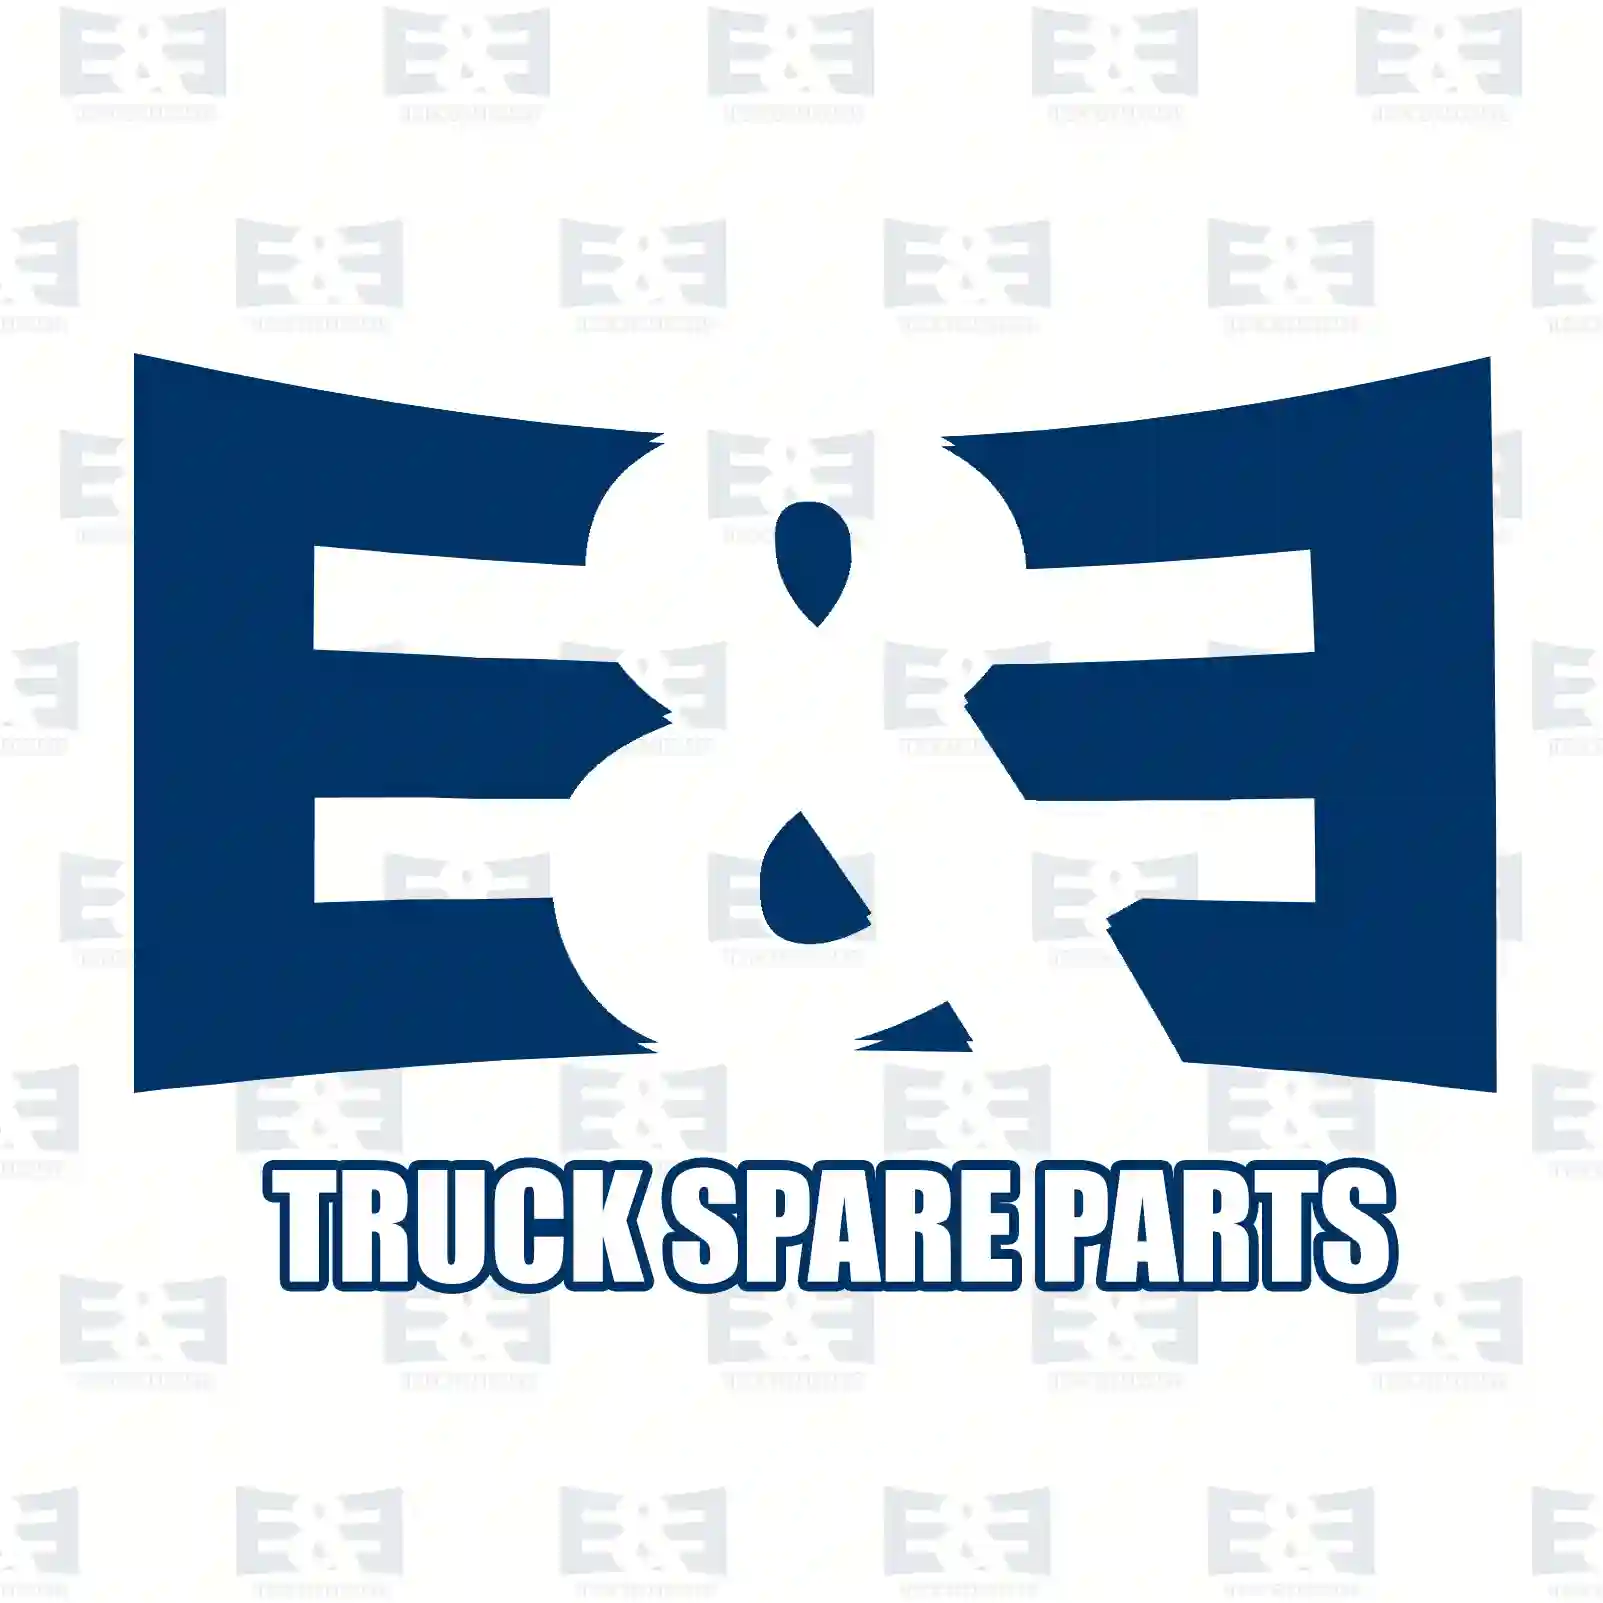 Nut, 2E2285216, 0252021280, 0252021282, 0252021680, 5126206AA, 000934008000, 000934008008, 000934008010, 000934008013, 000934008014, 304032008006, 4342001380, ZG40264-0008 ||  2E2285216 E&E Truck Spare Parts | Truck Spare Parts, Auotomotive Spare Parts Nut, 2E2285216, 0252021280, 0252021282, 0252021680, 5126206AA, 000934008000, 000934008008, 000934008010, 000934008013, 000934008014, 304032008006, 4342001380, ZG40264-0008 ||  2E2285216 E&E Truck Spare Parts | Truck Spare Parts, Auotomotive Spare Parts